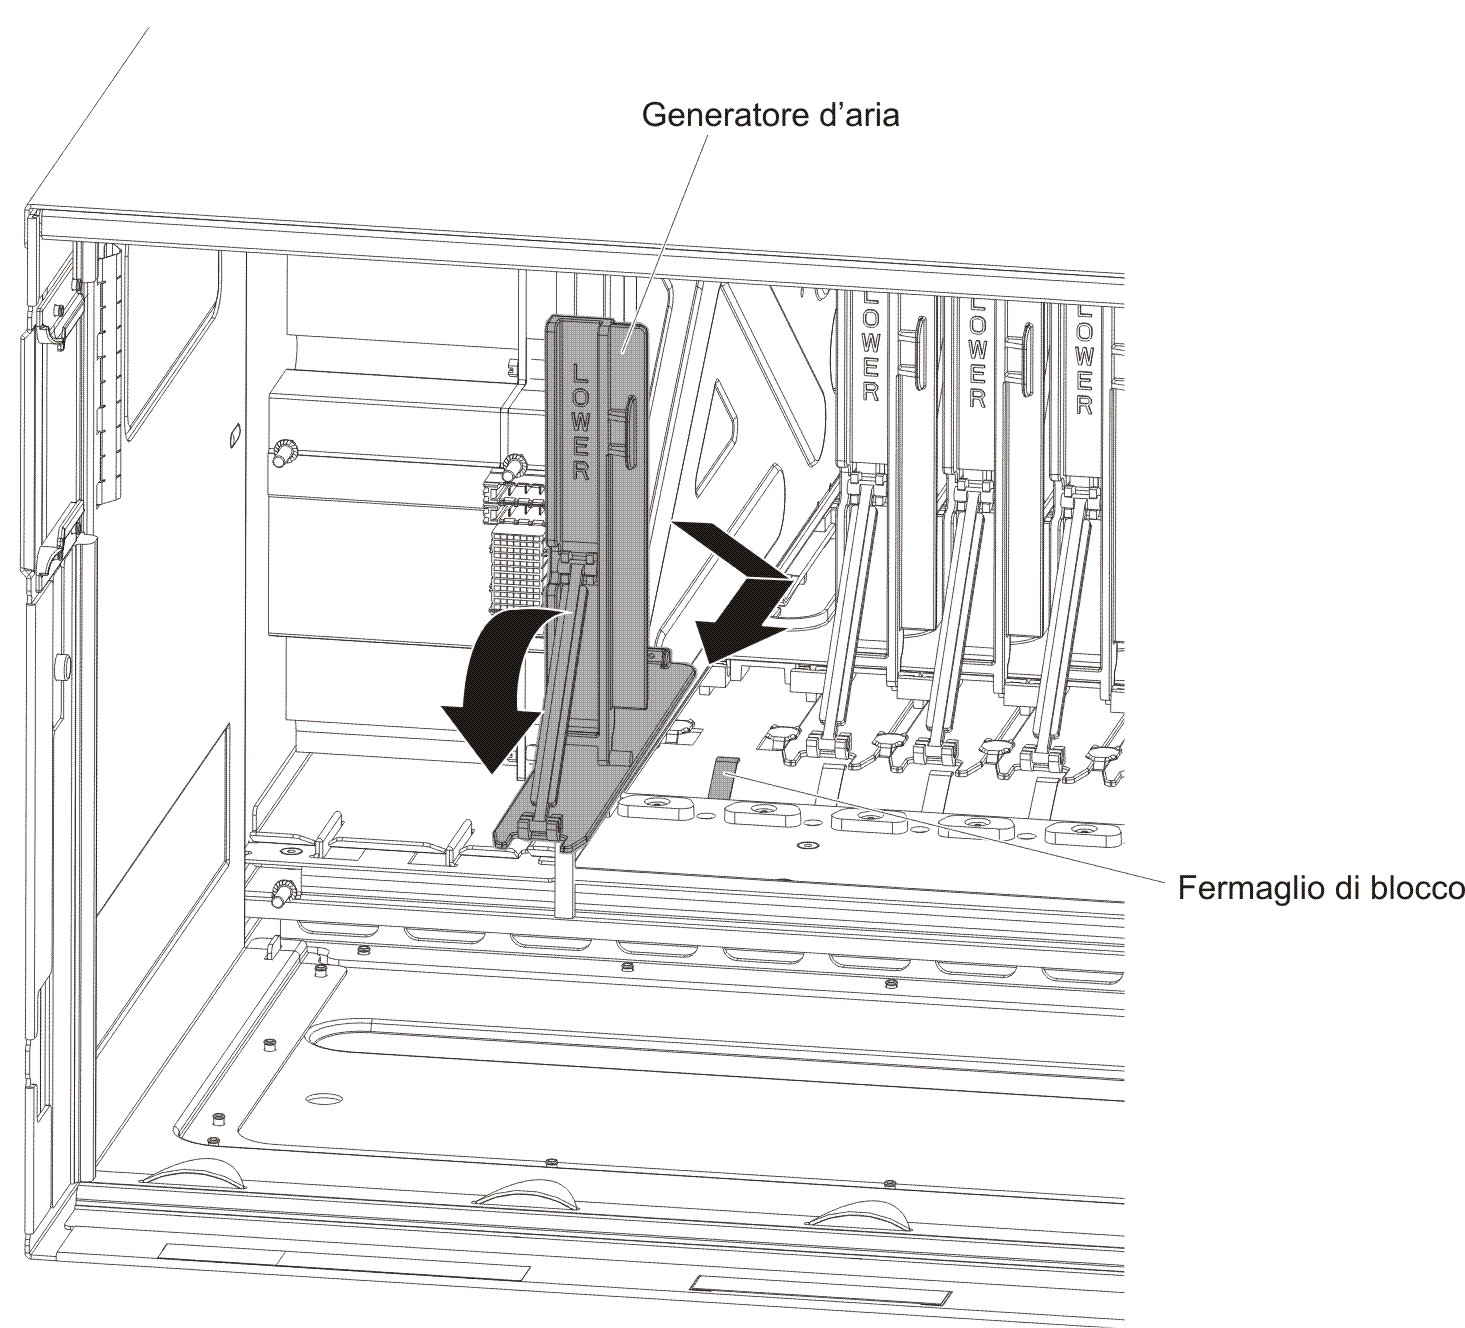 Figura che mostra il posizionamento del generatore d'aria nello slot dello chassis.